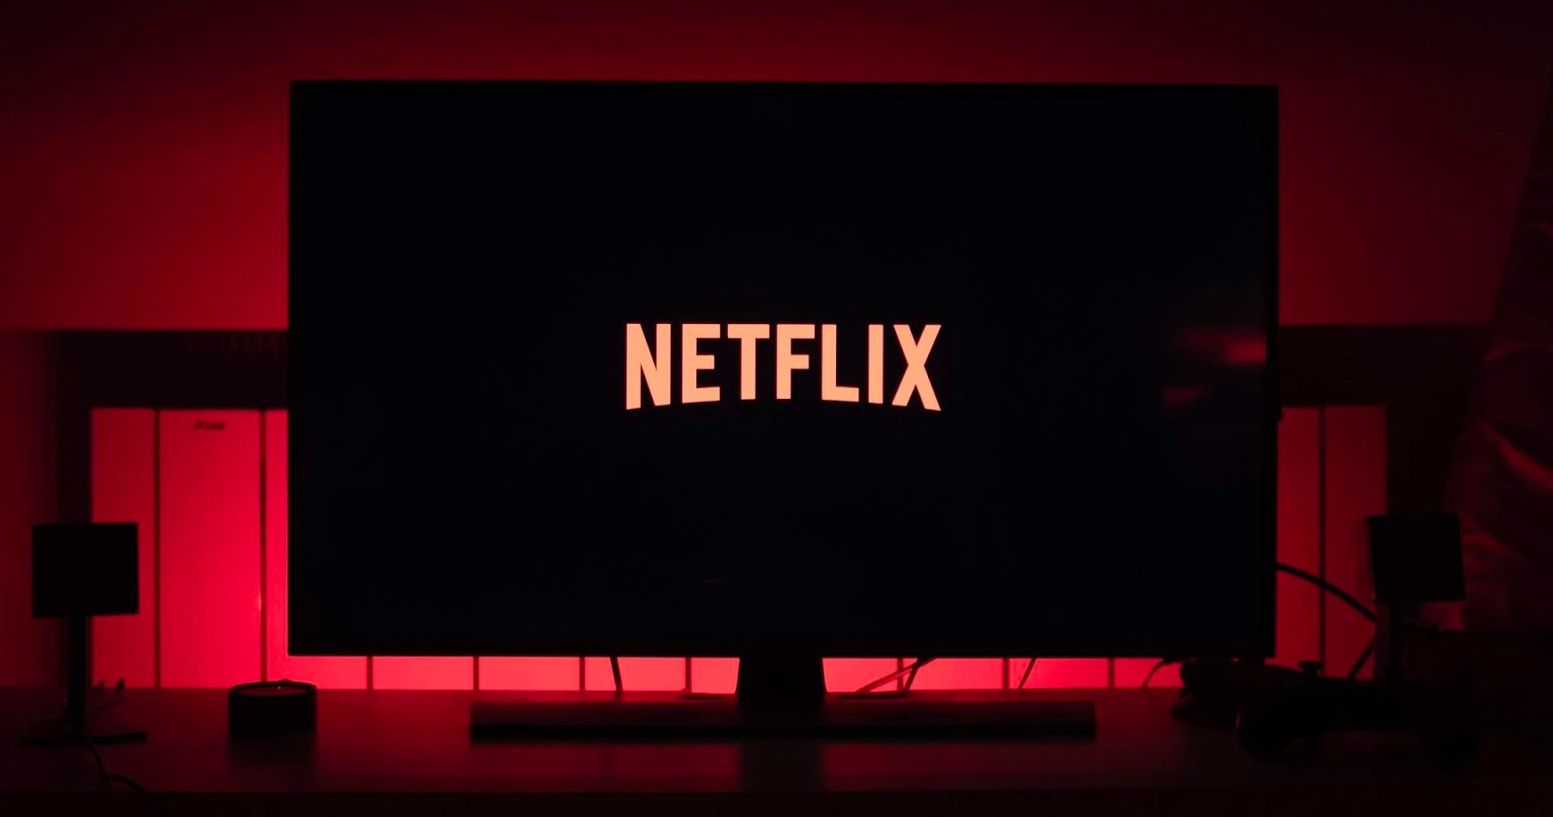 Netflix's Value Plummets by $24B in Past Week